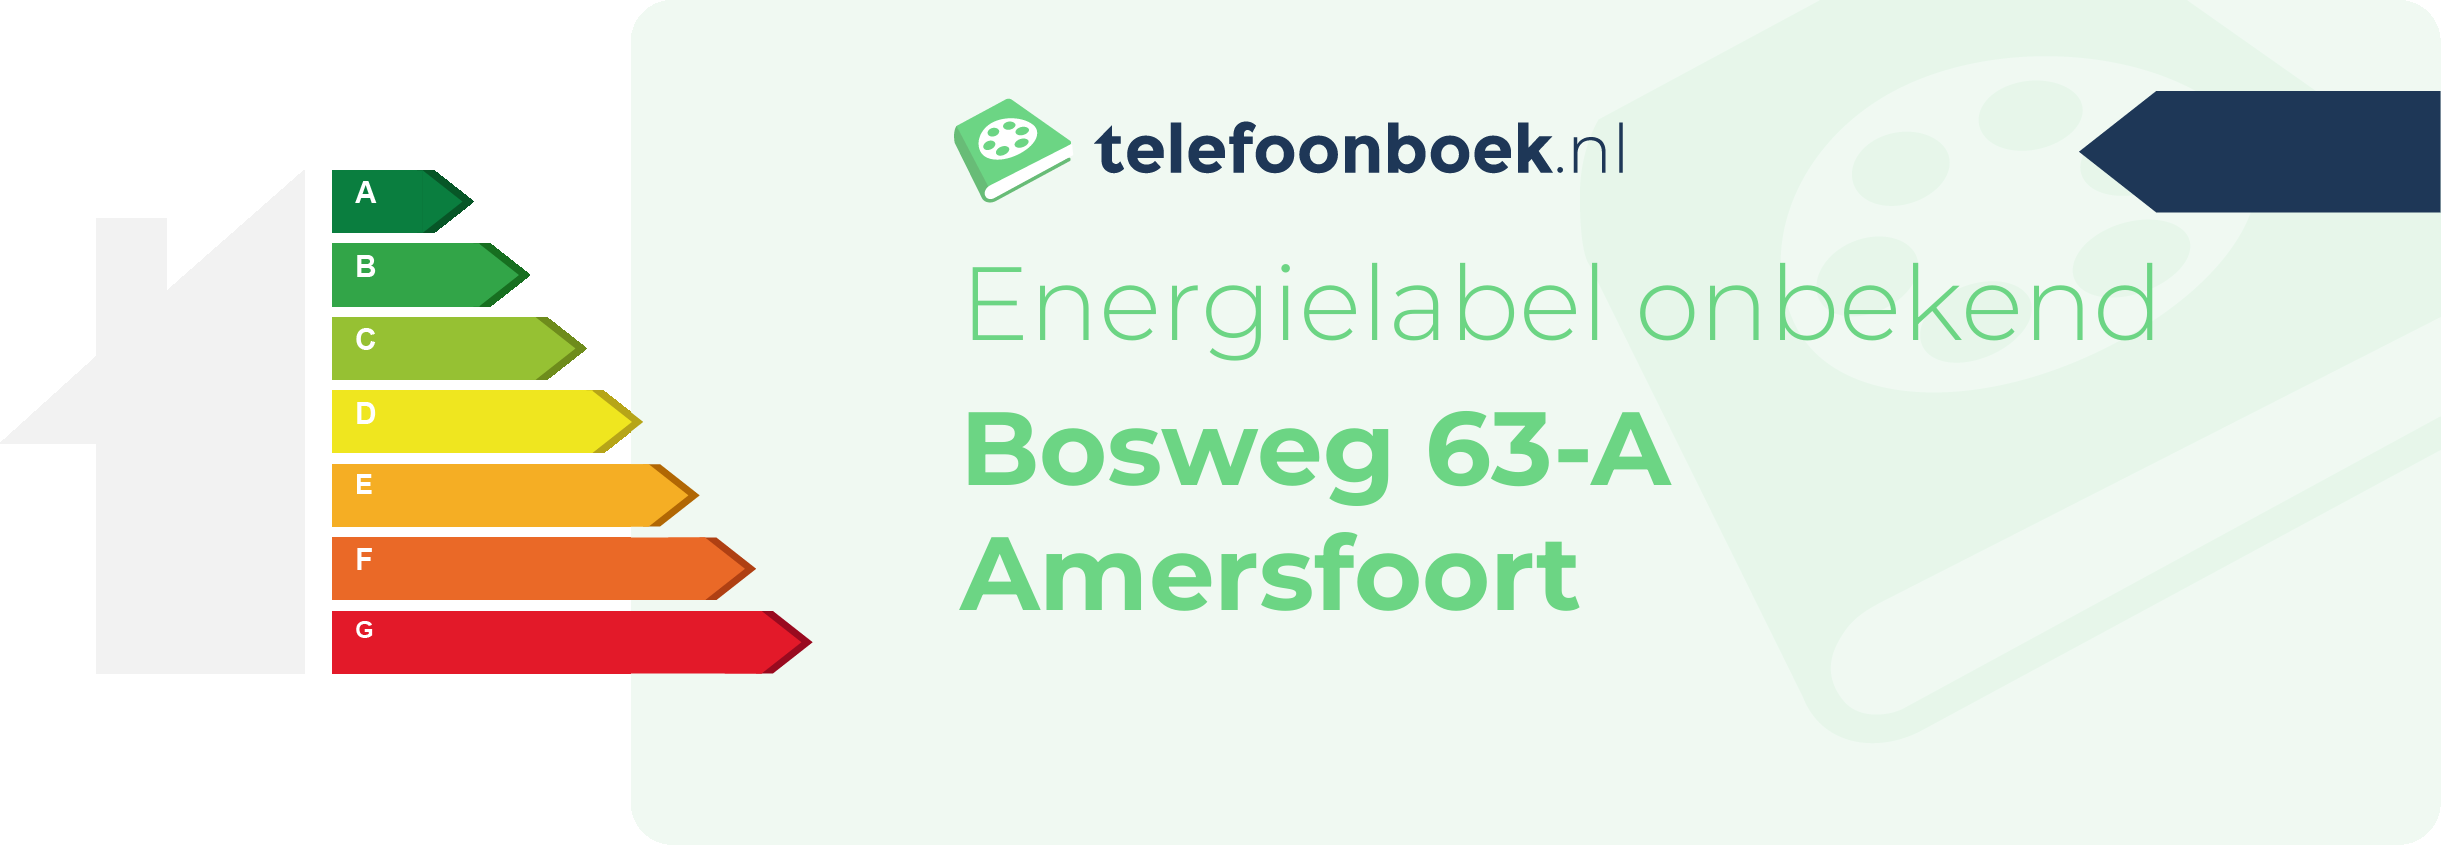 Energielabel Bosweg 63-A Amersfoort